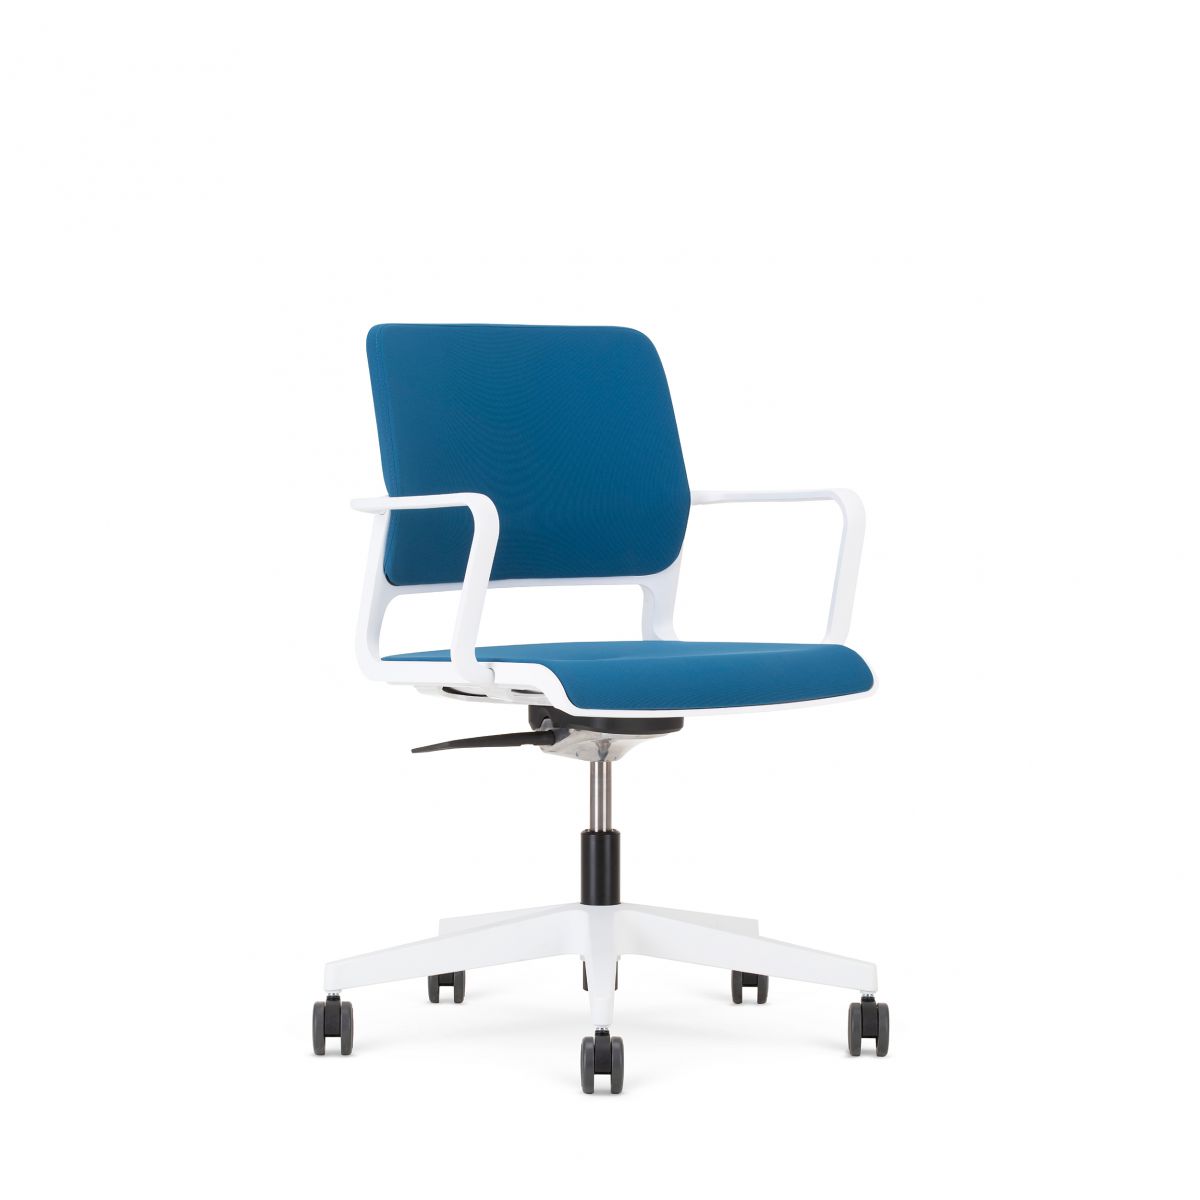 NOWY STYL - XILIUM Fotel Obrotowy Konferencyjny SWIVEL CHAIR UPH BLACK | Oparcie - Tapicerowane Krzesło w prezentacji w kolorze białym